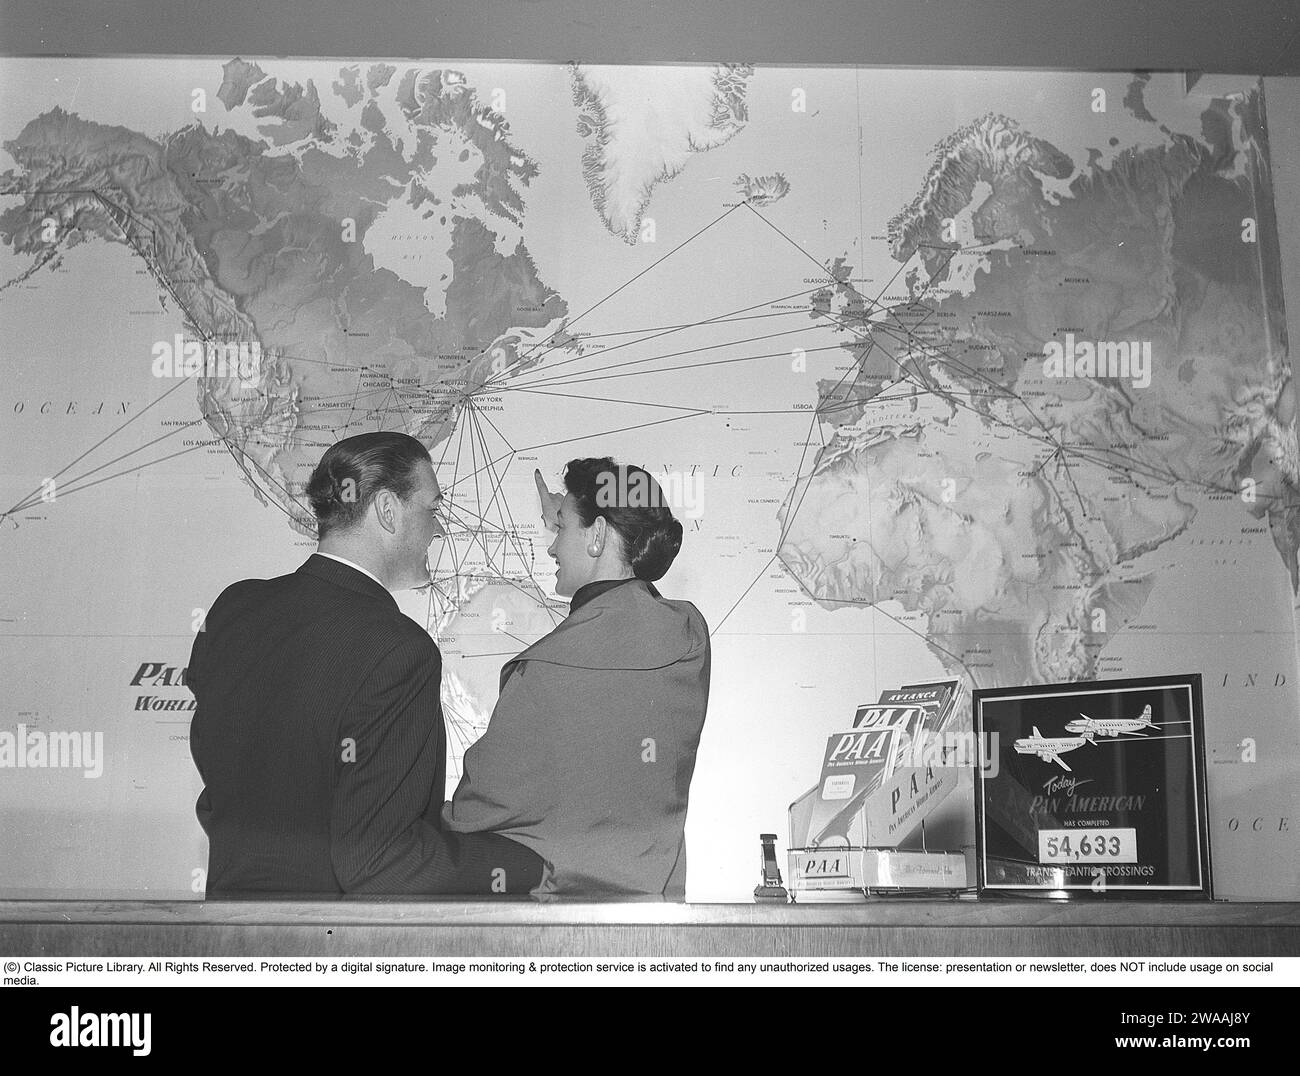 In den 1950er Jahren Ein junges Paar in einem Reisebüro steht vor einer Weltkarte und betrachtet alle Flugrouten der amerikanischen Fluggesellschaft Pan American zwischen verschiedenen Ländern und Kontinenten. Das klassische Logo von Pan am ist auf der Karte und auf dem Ordner auf dem Tresen zu sehen. Die Fluggesellschaft war die größte internationale Fluggesellschaft in den USA mit den meisten internationalen Flügen. 1955. Kristoffersson Ref. BX51-4 Stockfoto